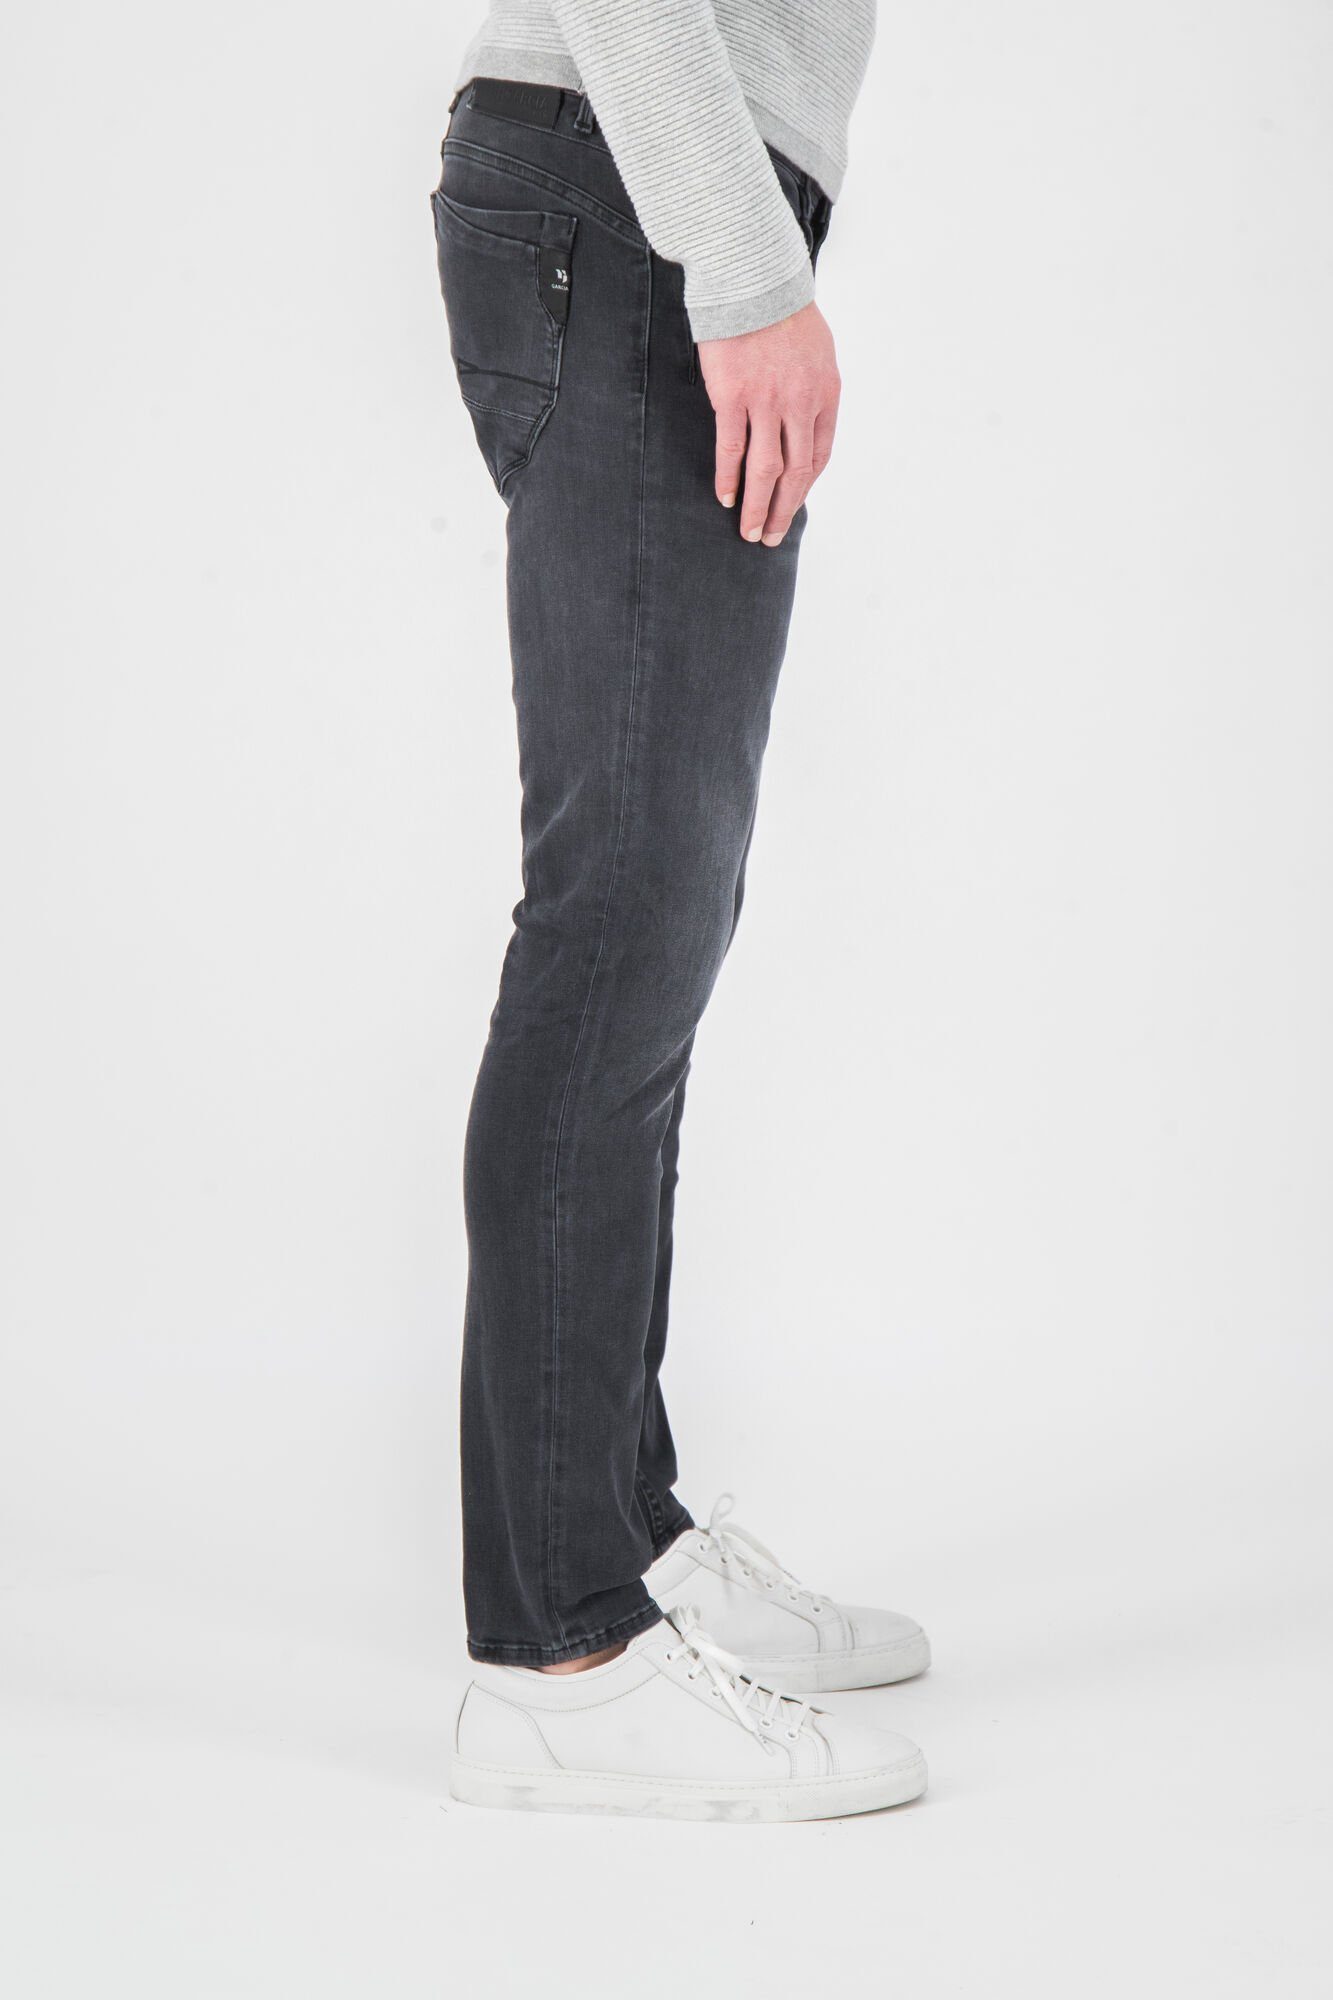 ROCKO 690.6080 grey GARCIA schwarz 5-Pocket-Jeans GARCIA JEANS used dark